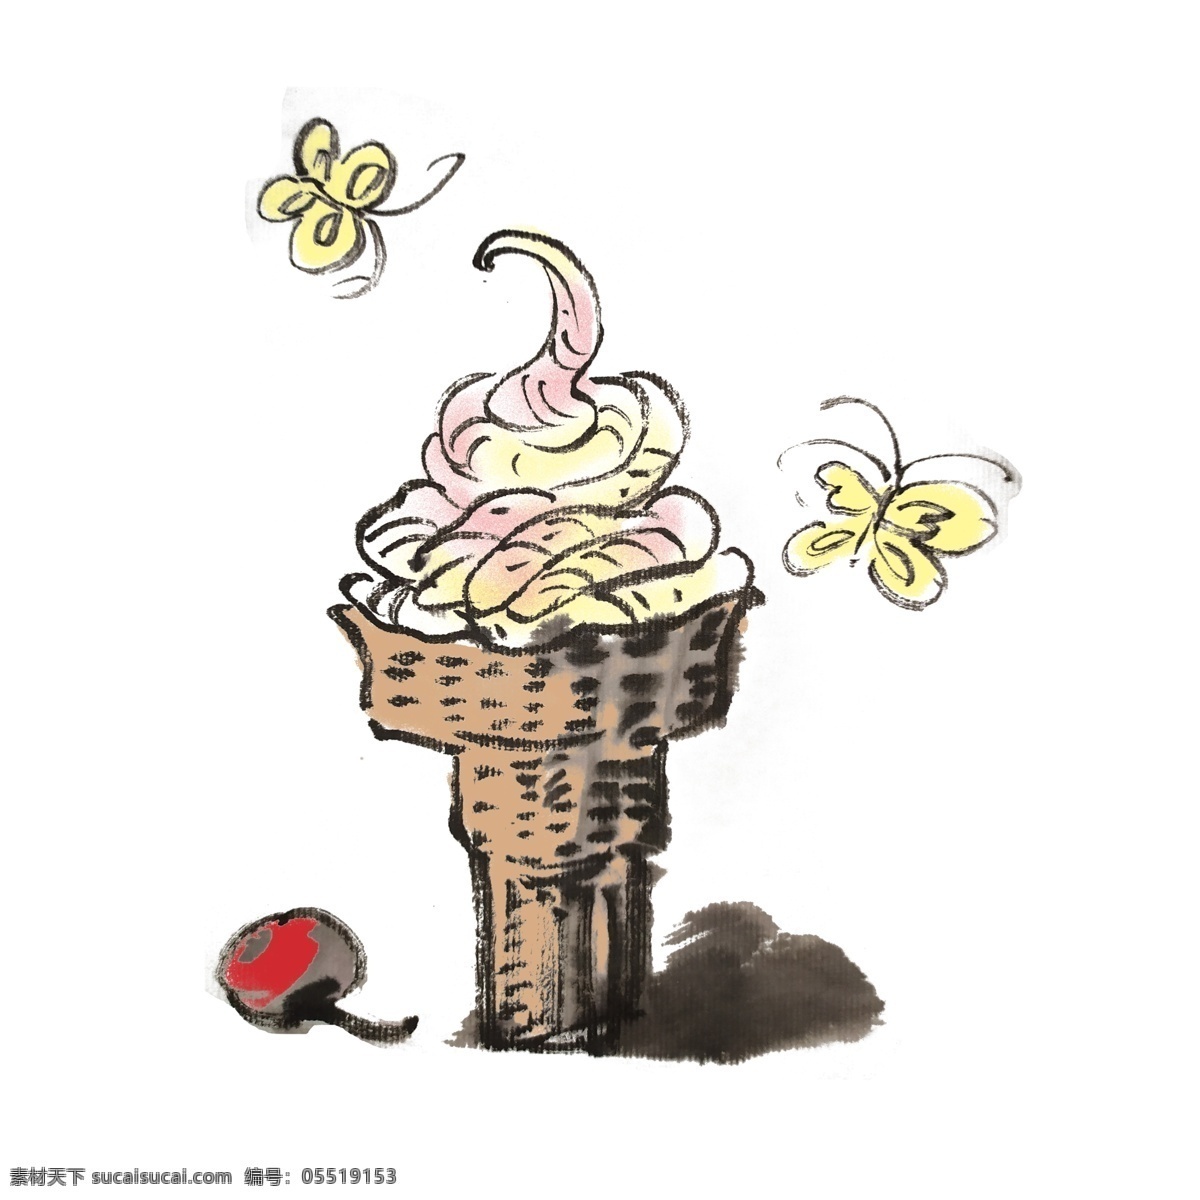 可爱 冰淇淋 手绘 插画 清凉一夏 奶油 甜品 粉丝 夏季 夏天 中国风 古风 水墨风 墨迹 彩色